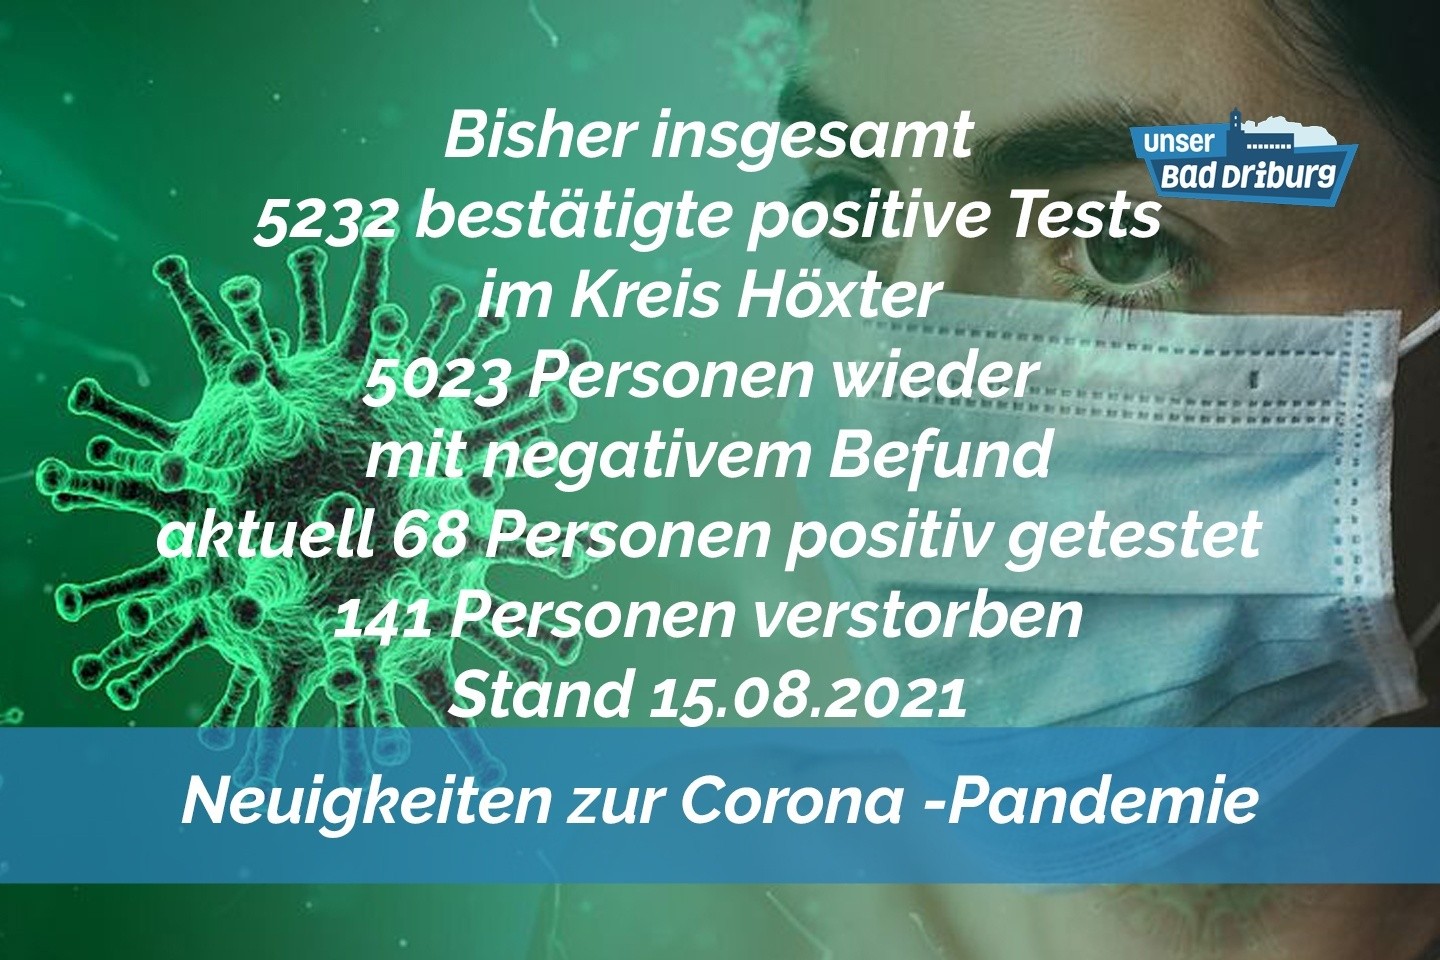 Update 15. August: 6 weitere amtlich positive Tests im Kreis Höxter